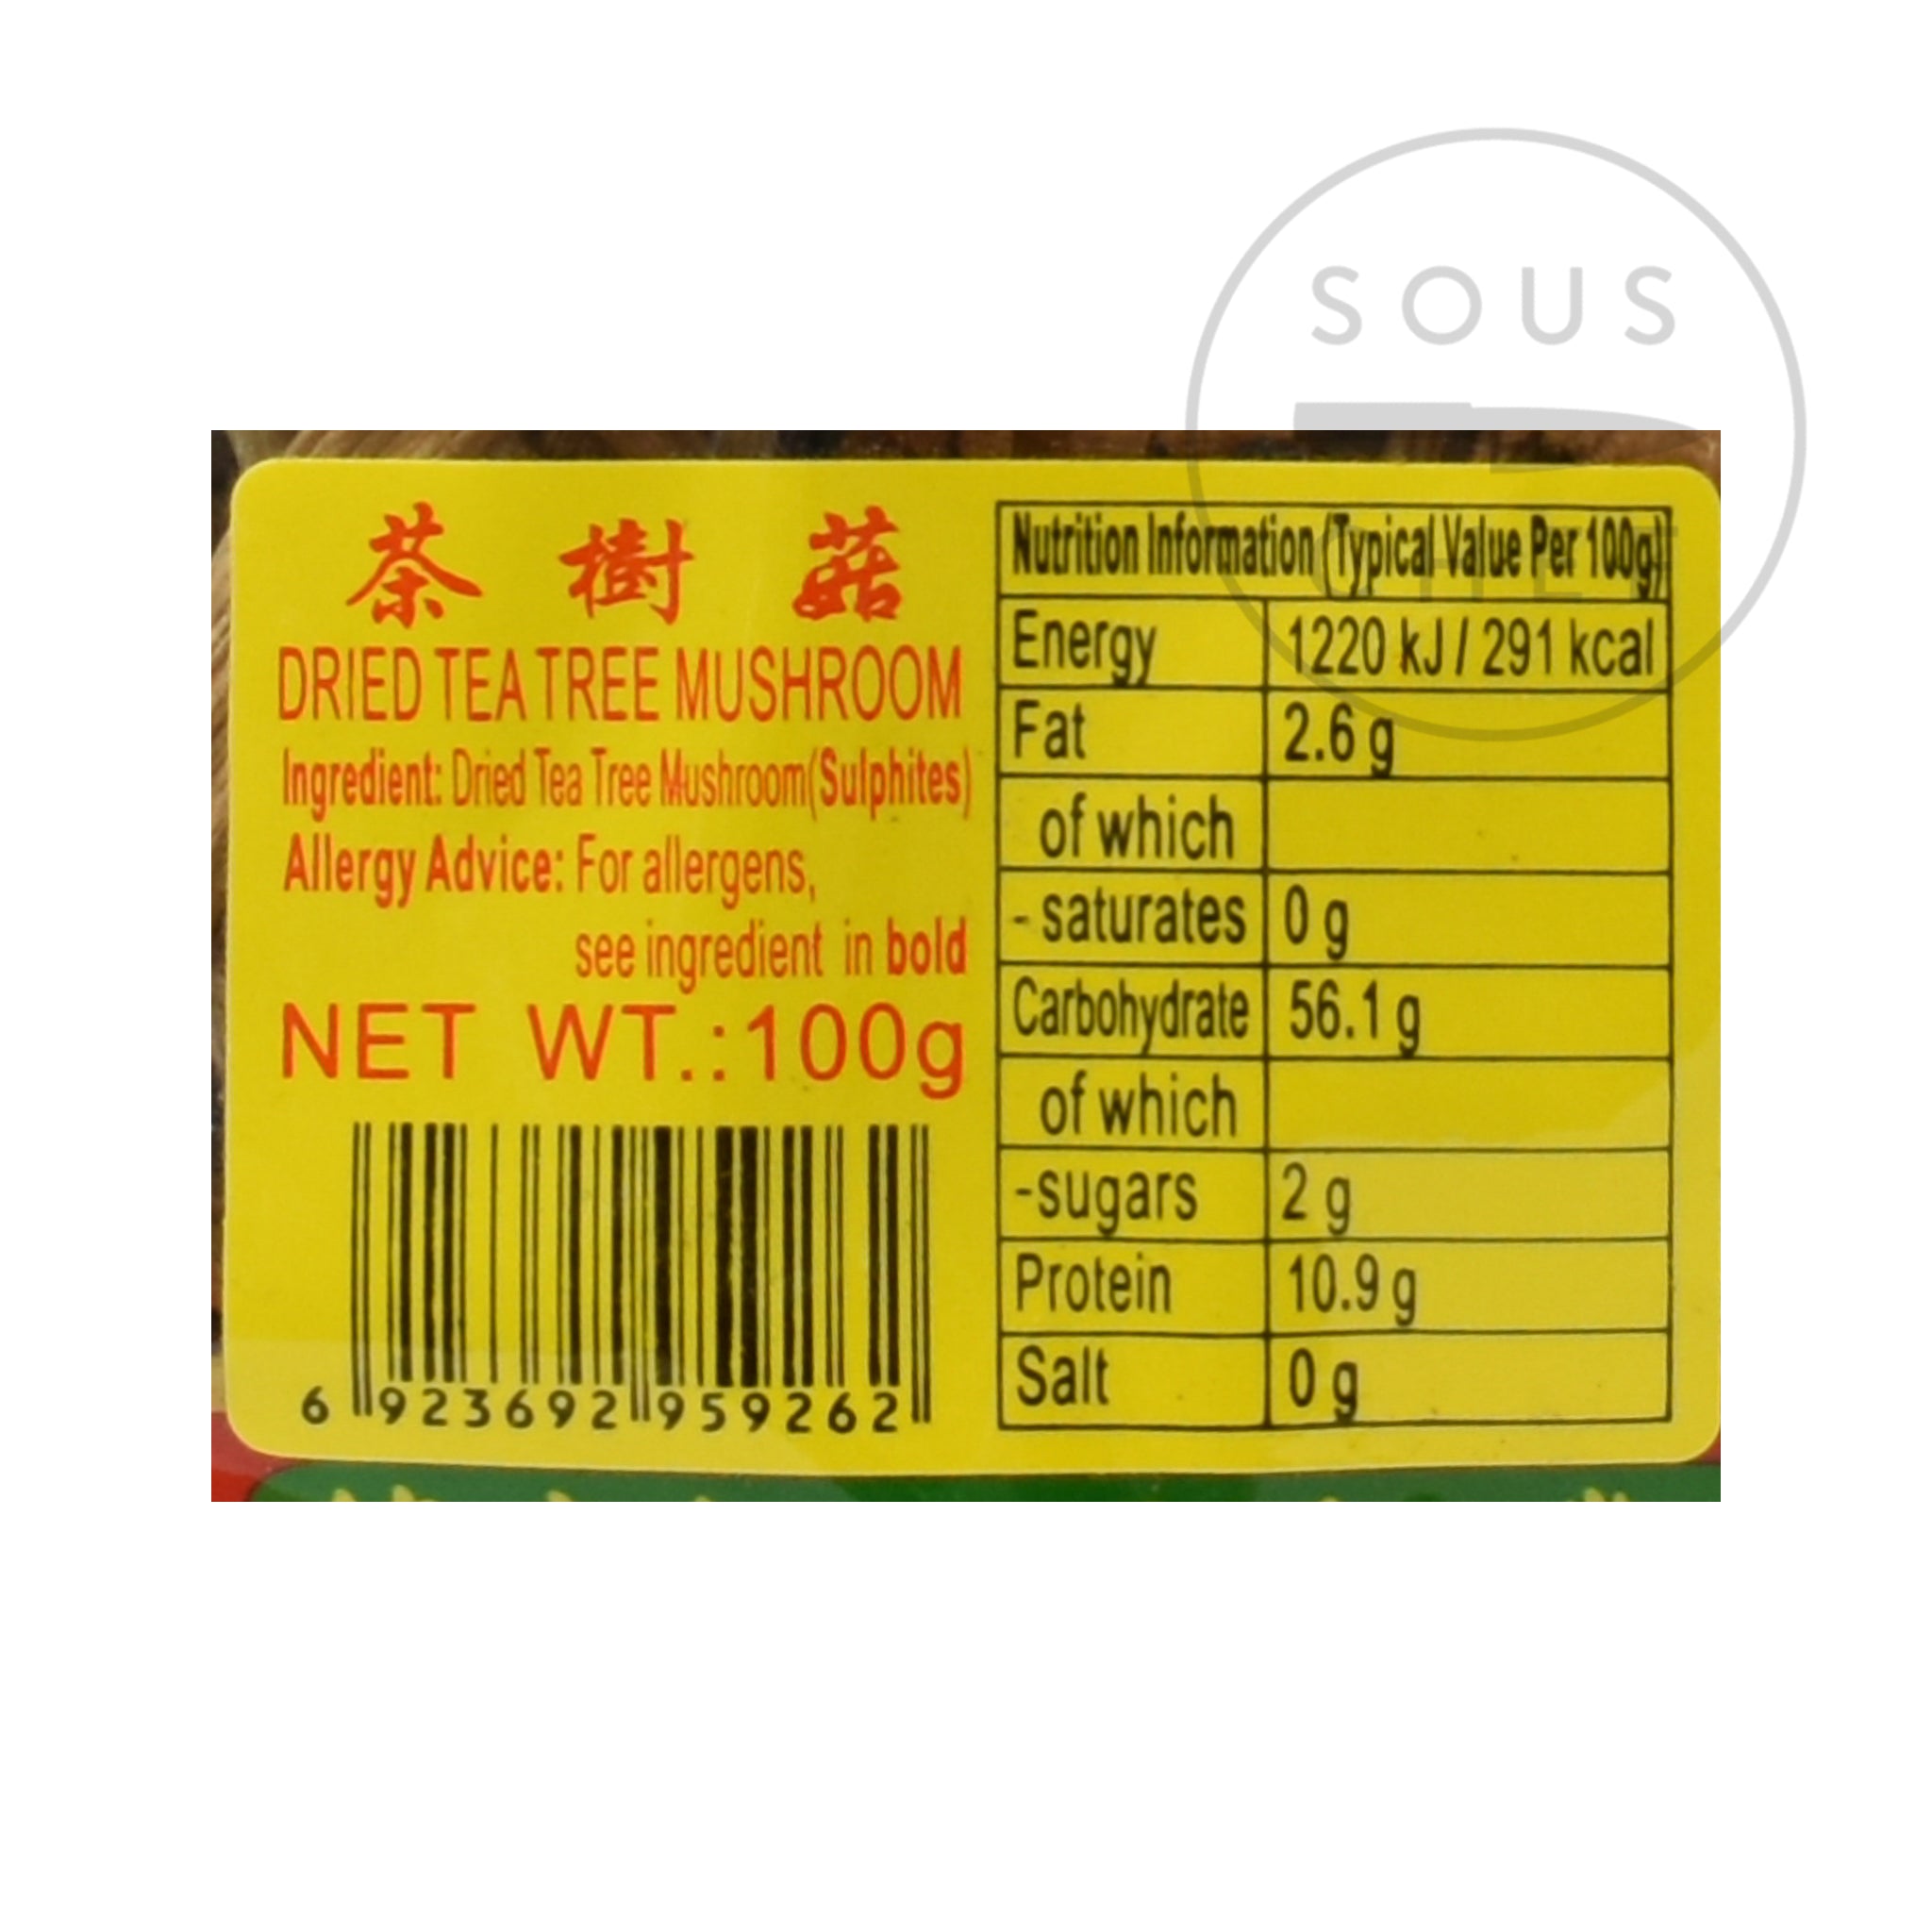 Dried Tea Tree Mushroom 100g nutritional information ingredients